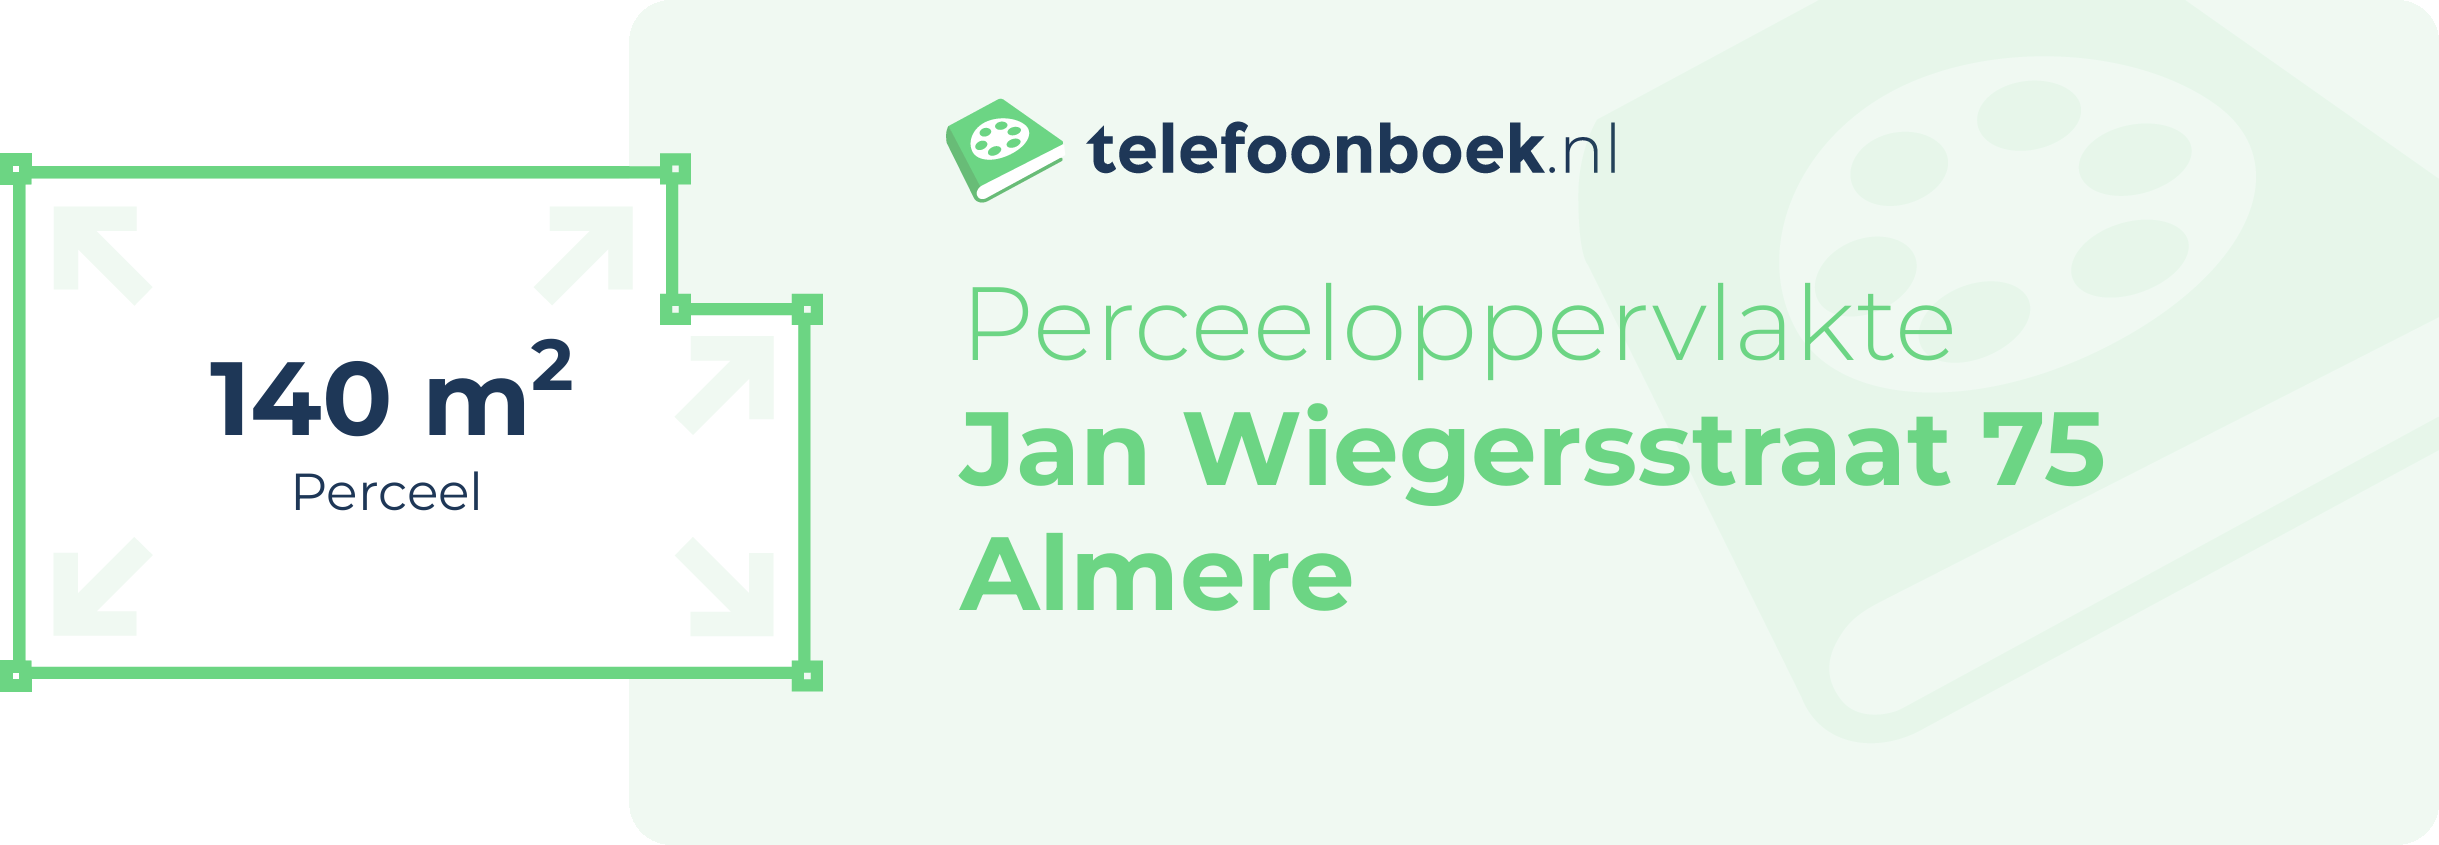 Perceeloppervlakte Jan Wiegersstraat 75 Almere